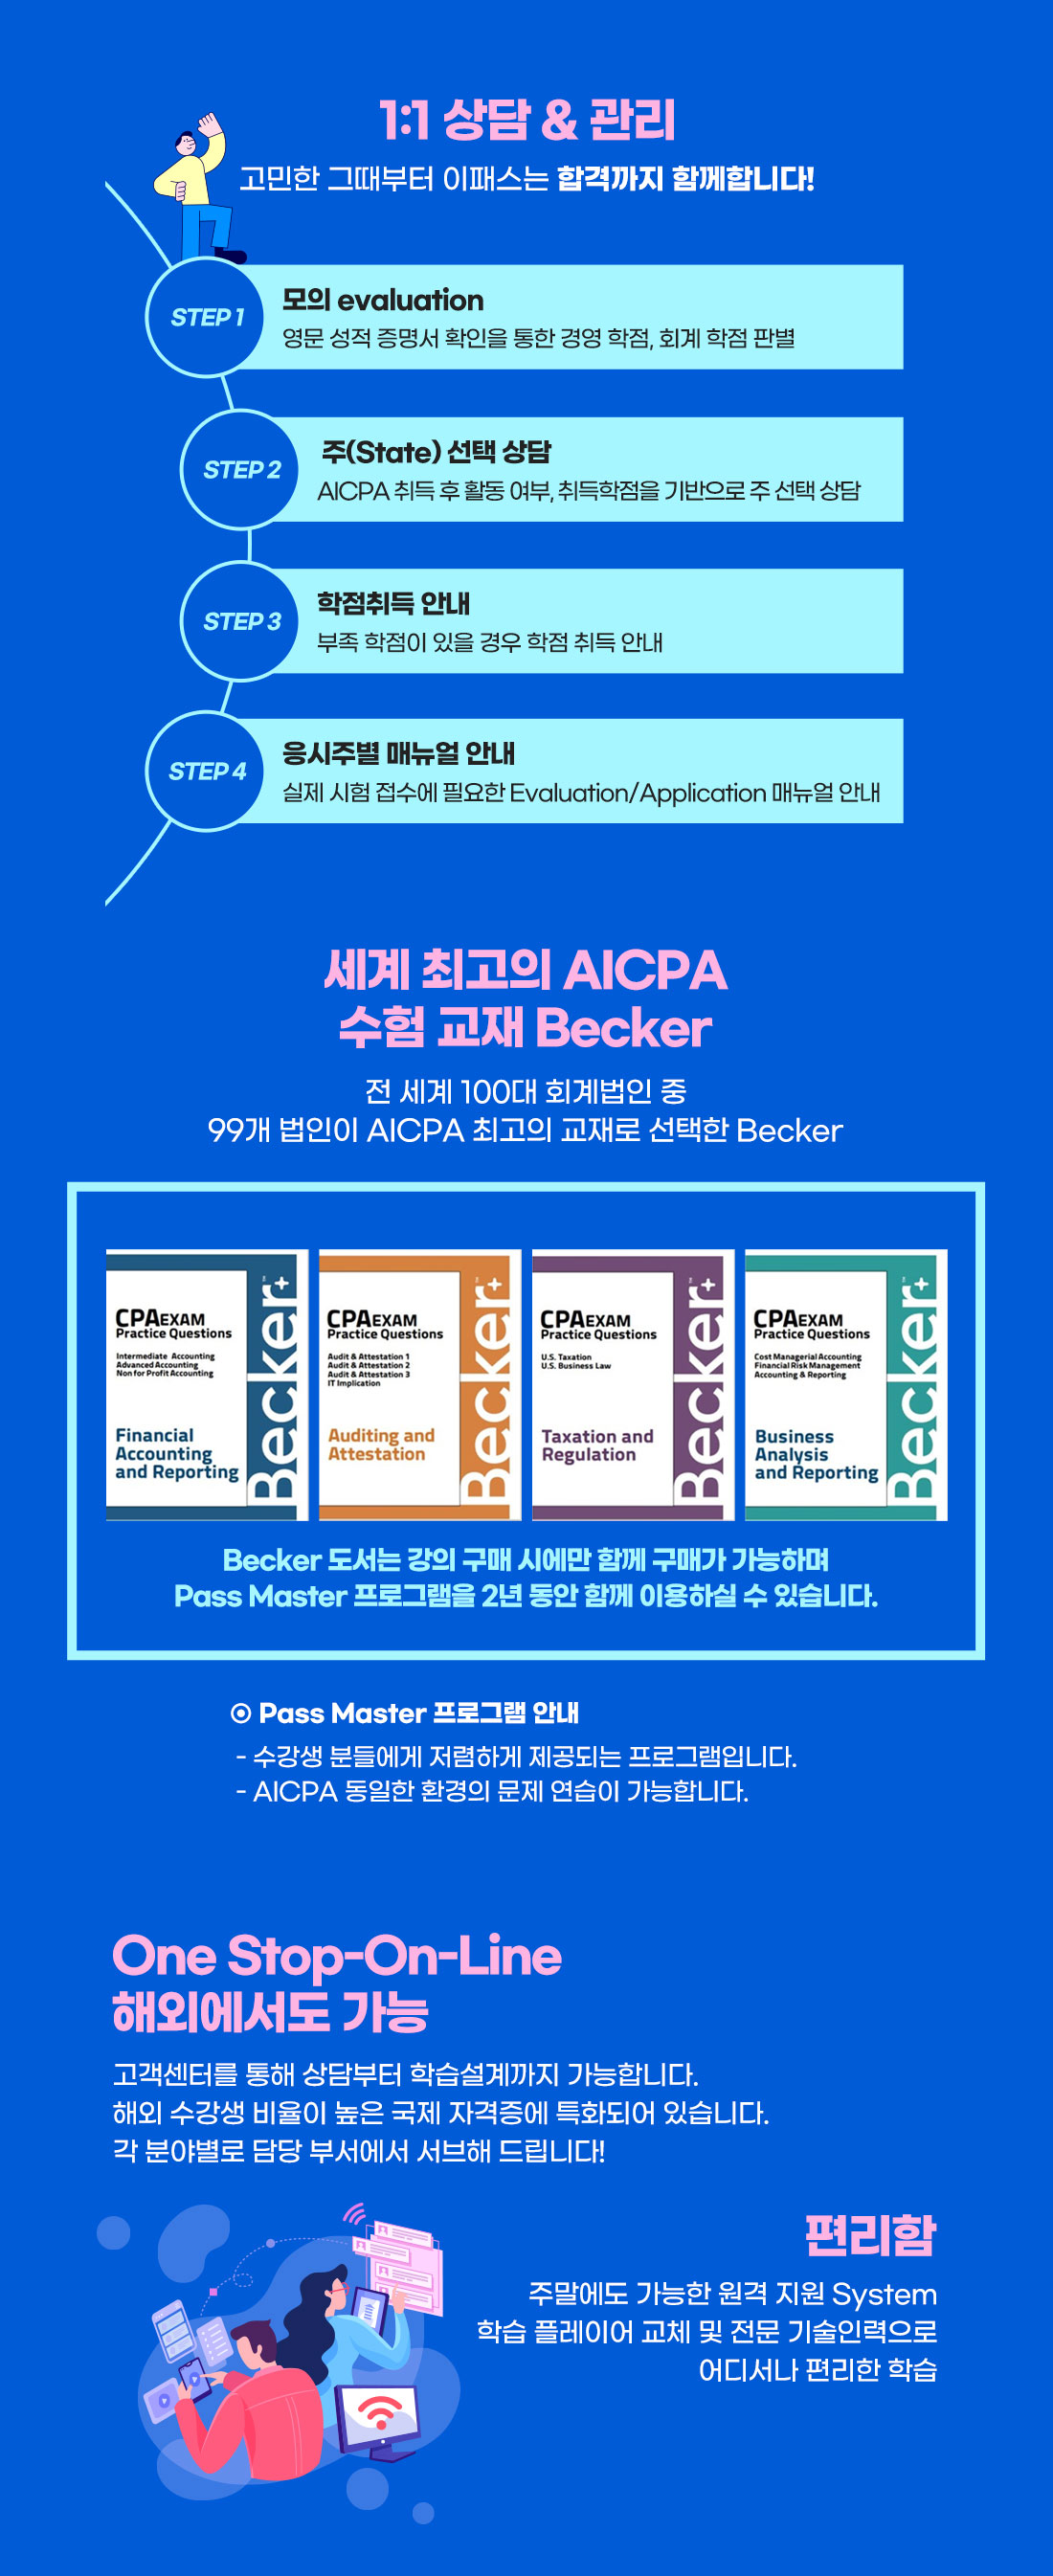 AICPA Premium Package